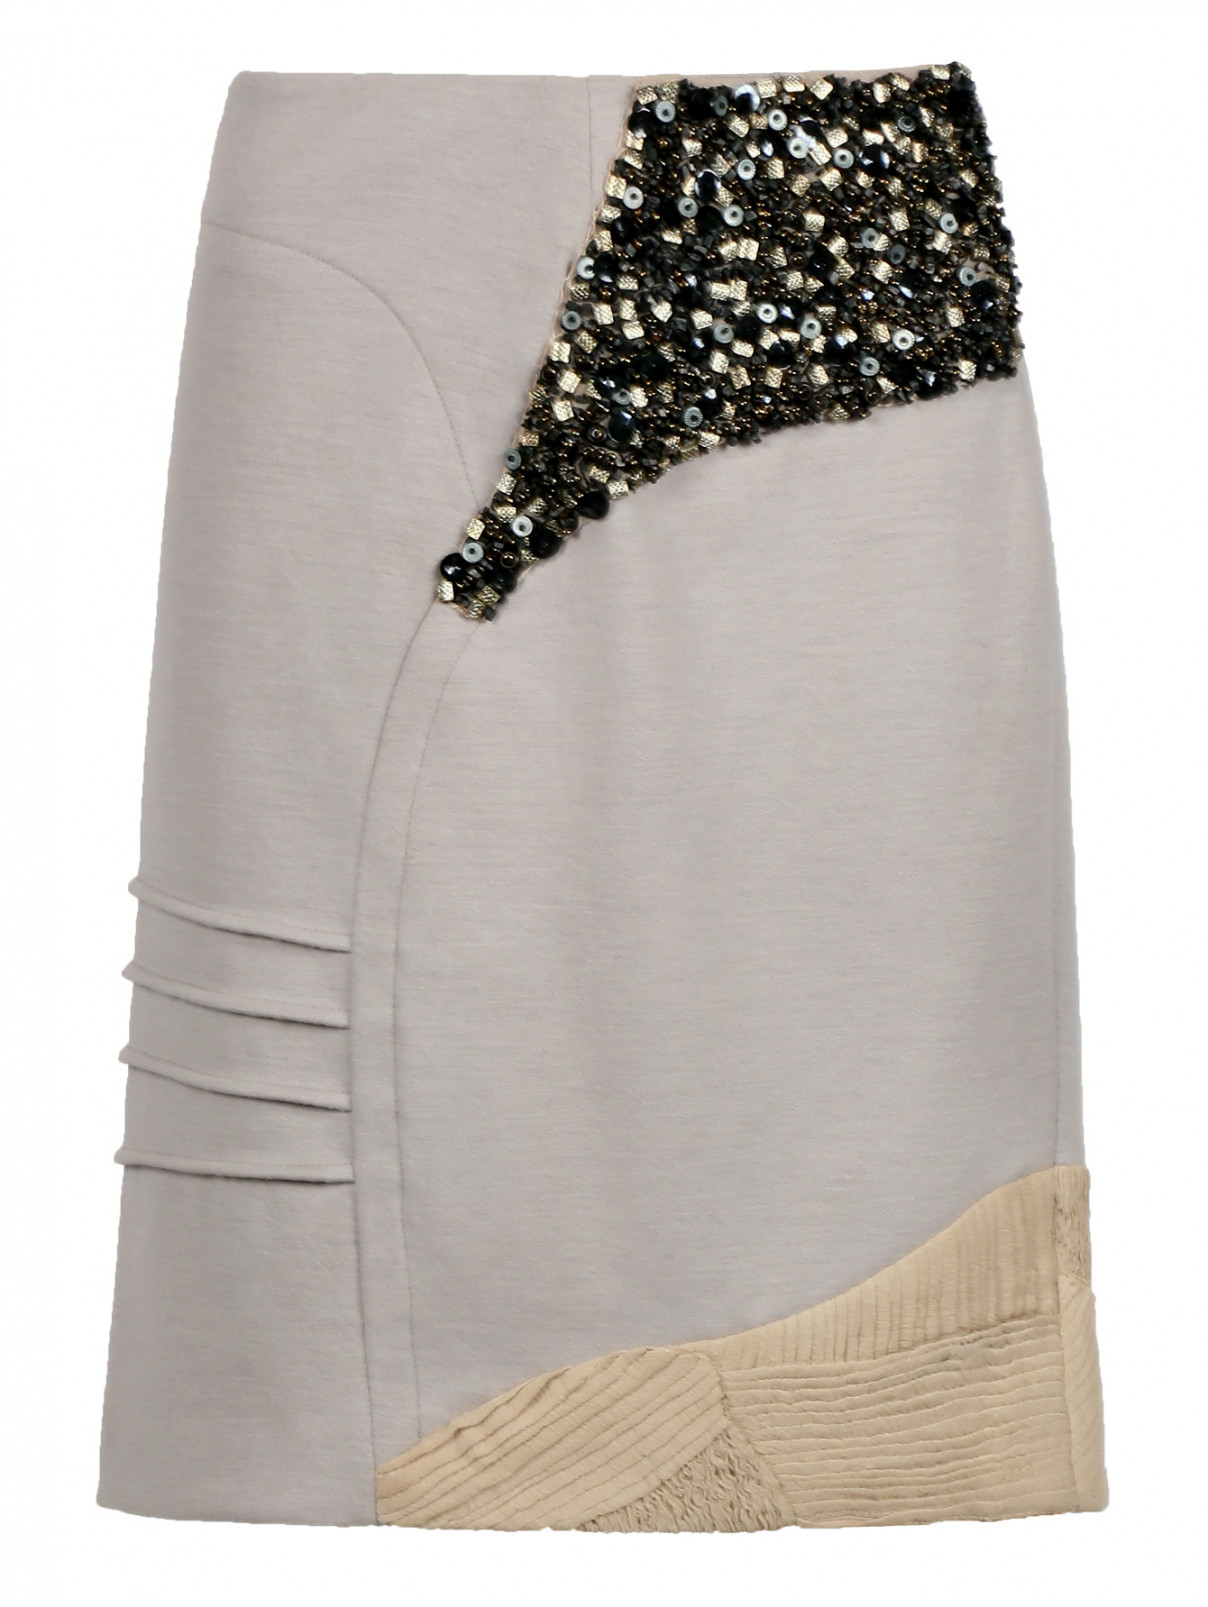 Шерстяная юбка декорированная камнями Yigal Azrouel  –  Общий вид  – Цвет:  Серый